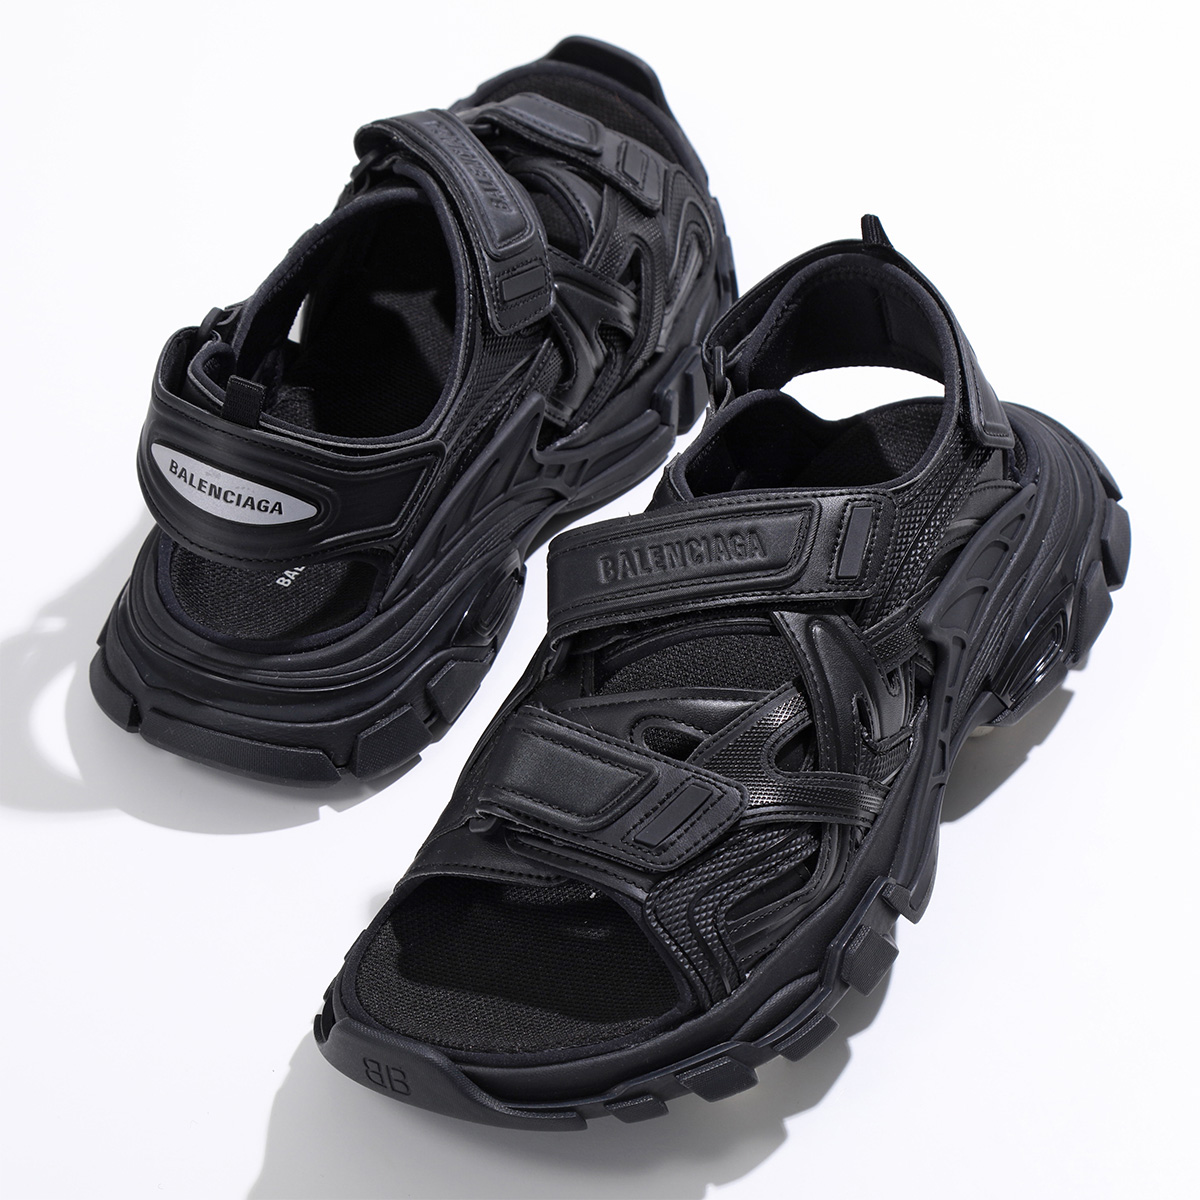 特別価格BALENCIAGA バレンシアガ サンダル Track Sandal 617542 W2CC1 メンズ ベルクロ ストラップ ロゴ シューズ 靴 1000 BLACK